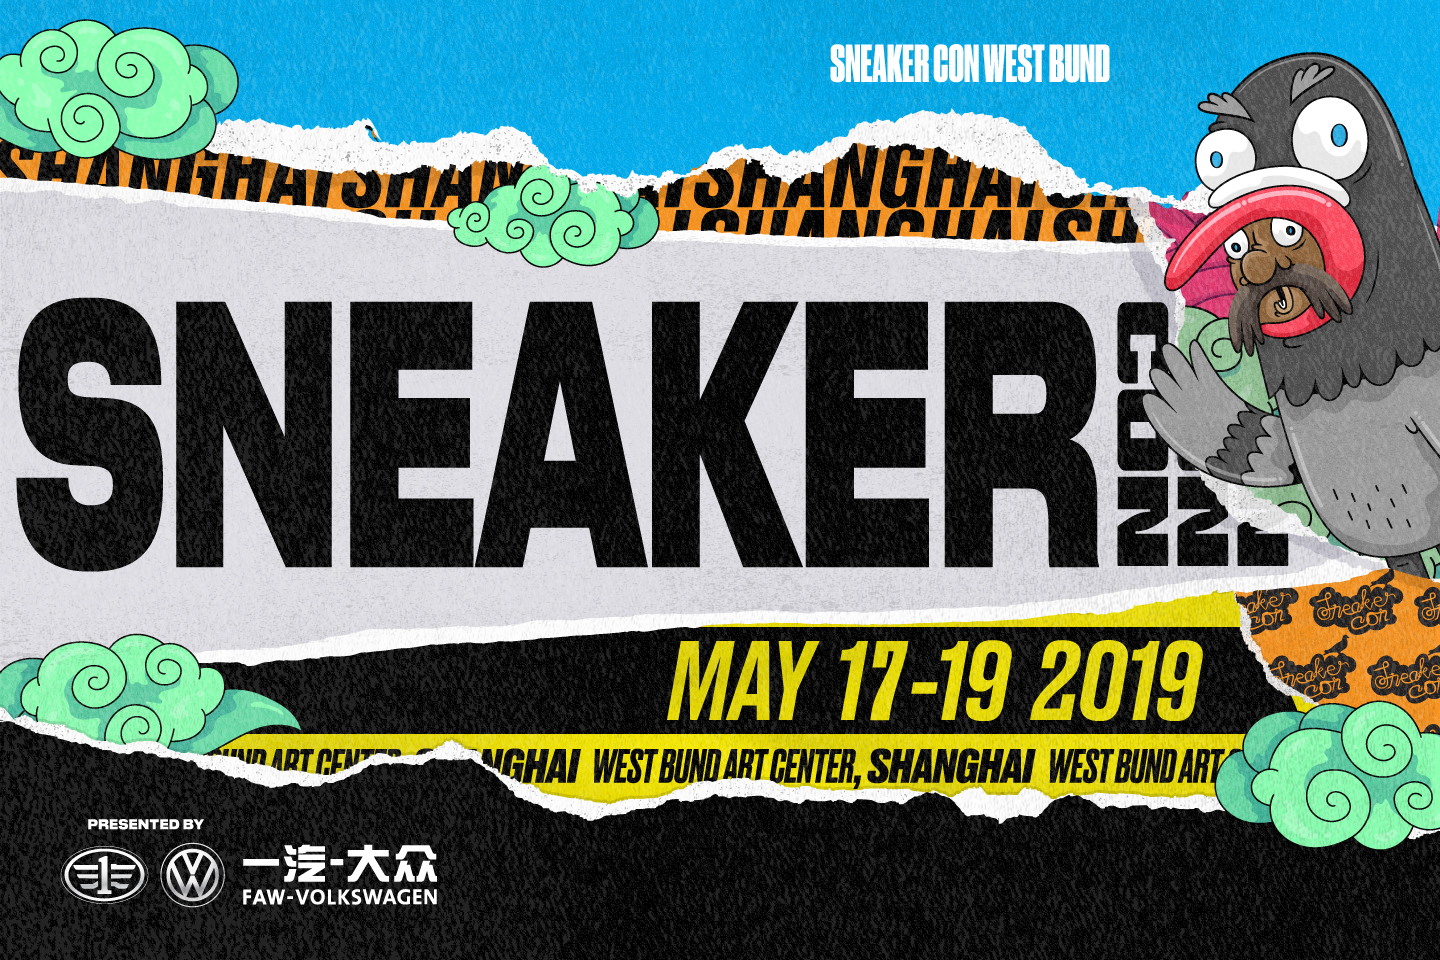 sneaker con locations 2019